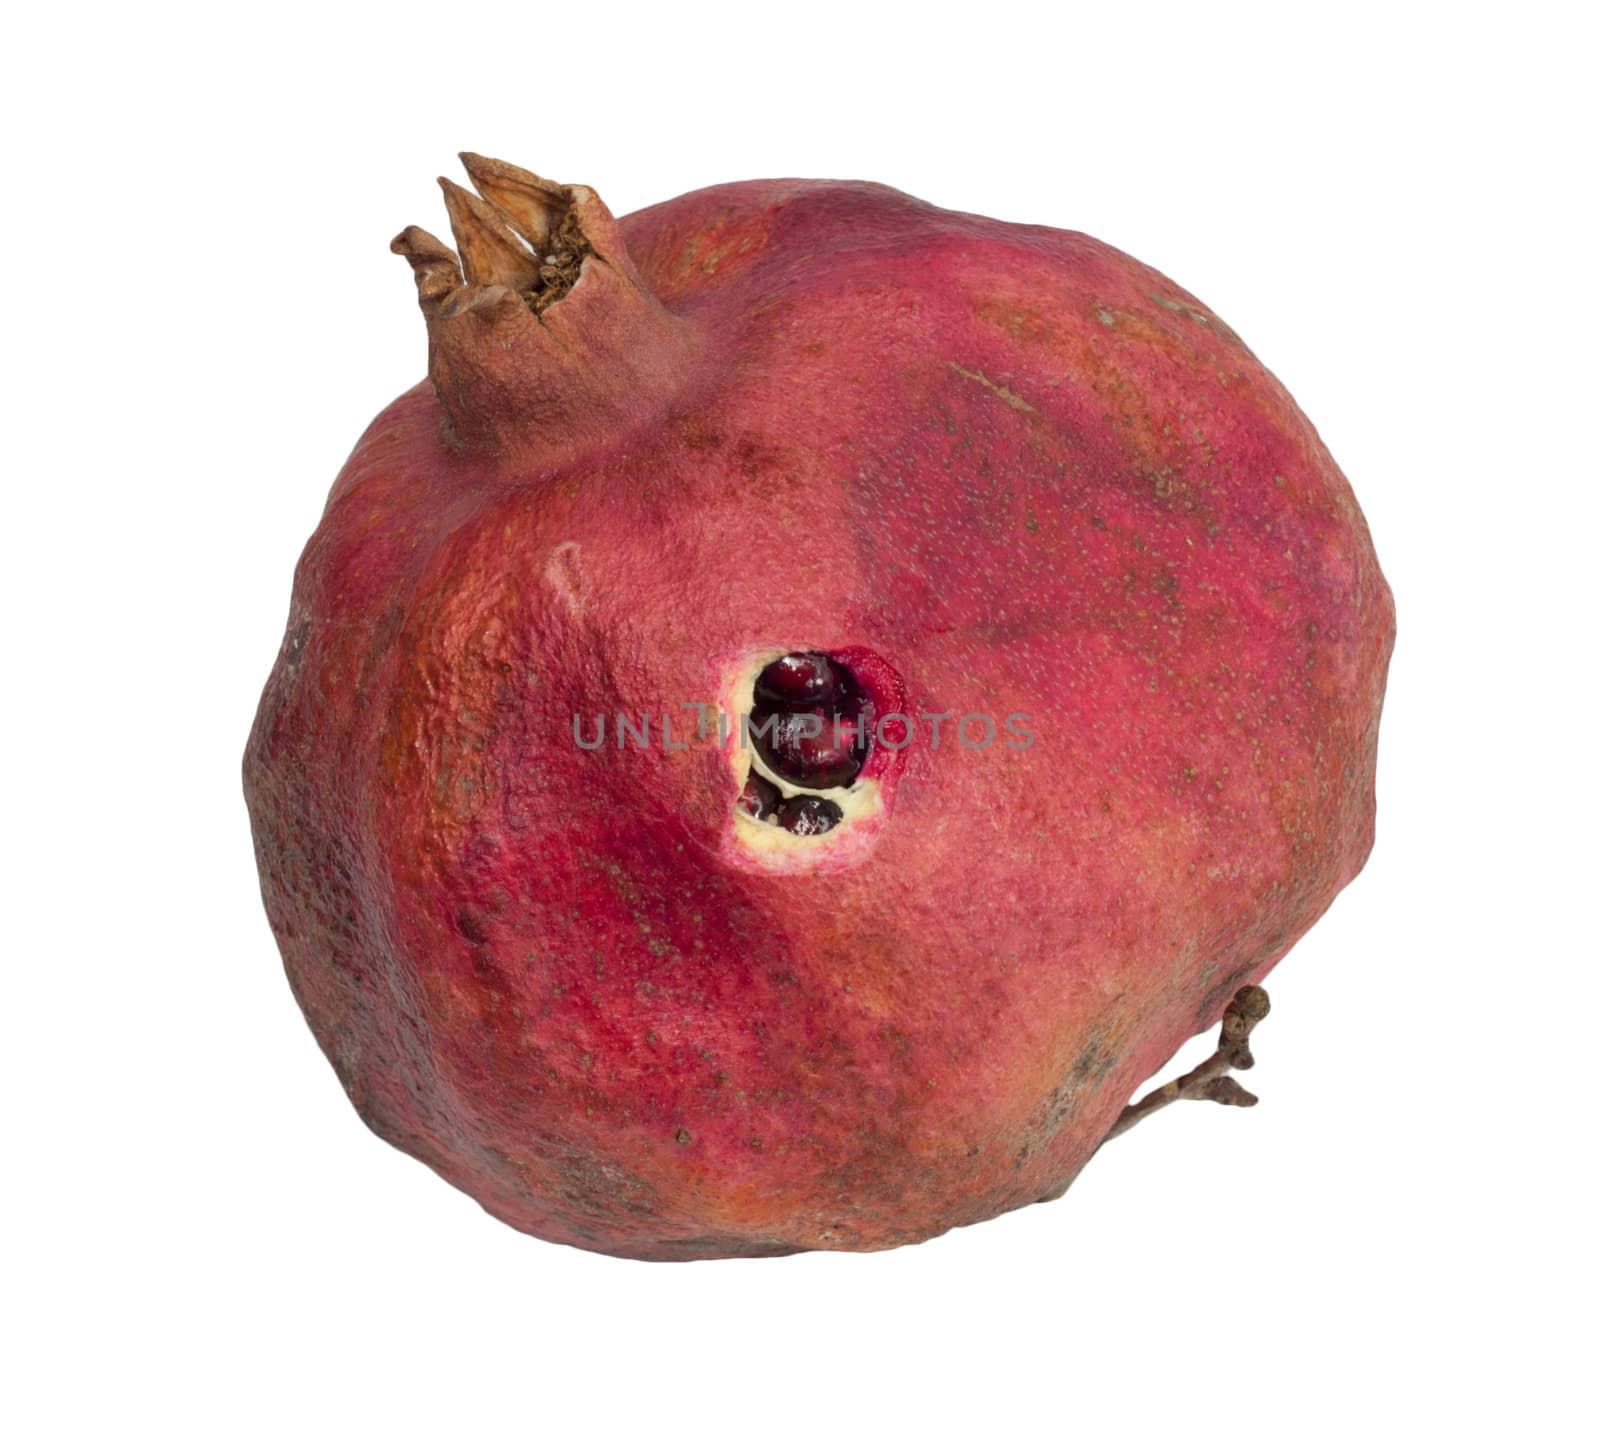 pomegranate isolated on white background 